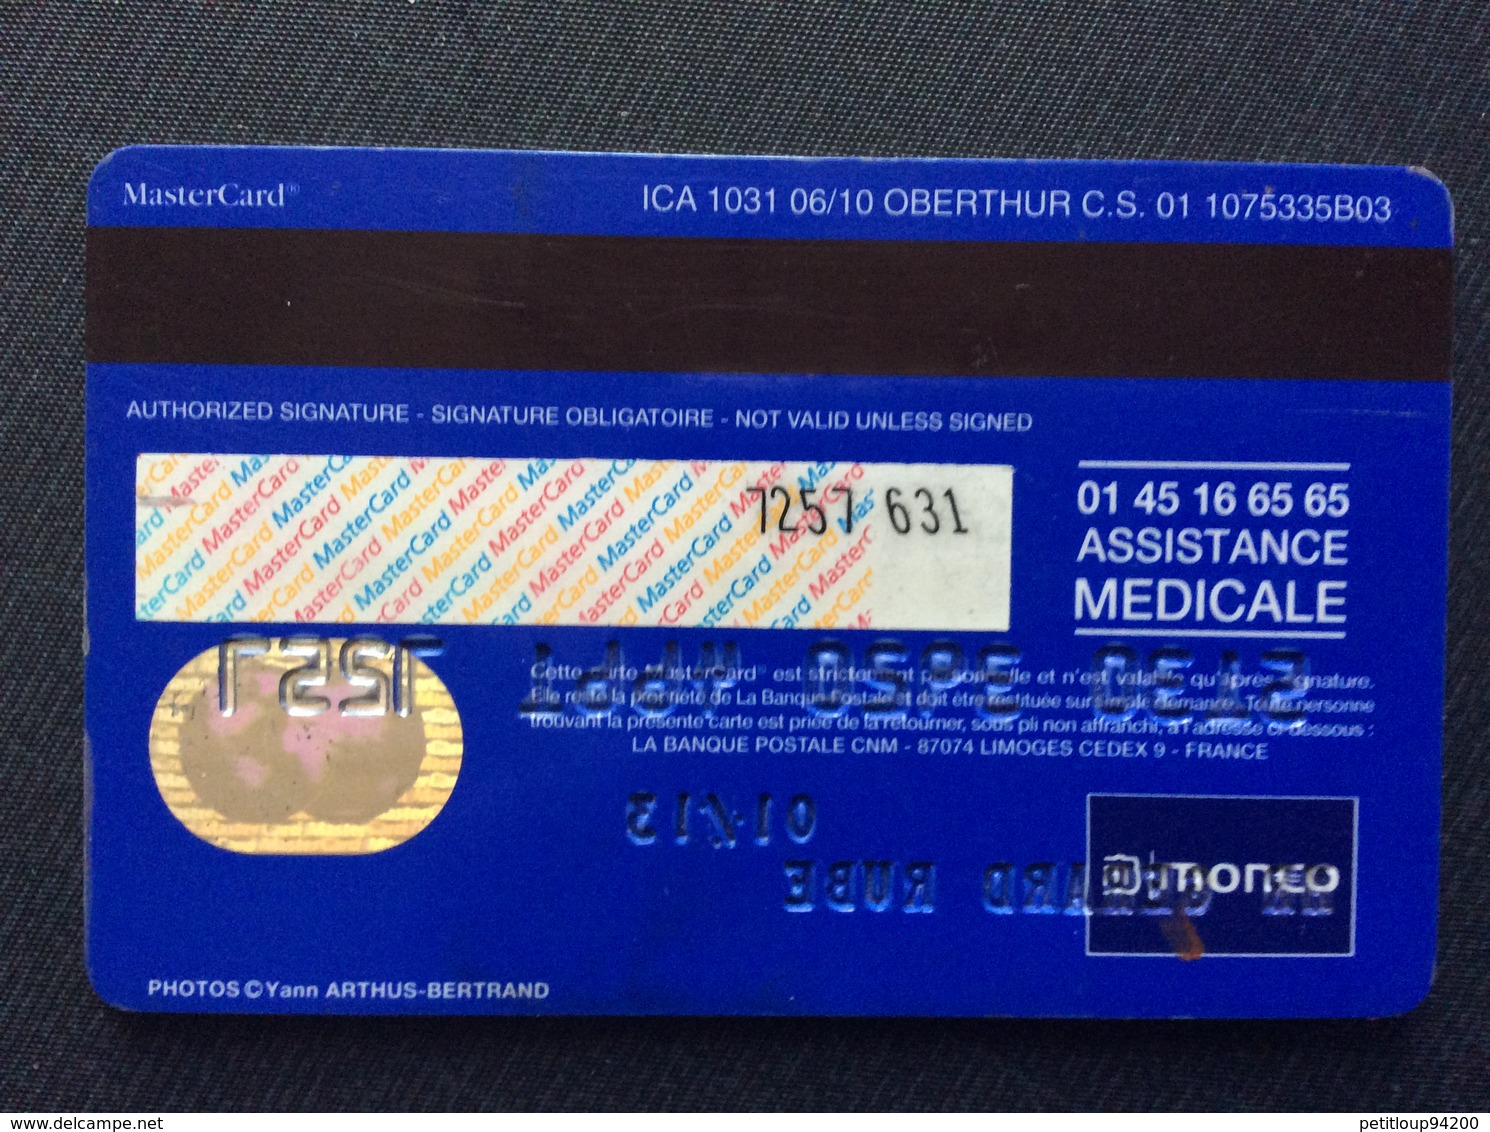 CARTE BANCAIRE LA BANQUE POSTALE  Master Card - Disposable Credit Card